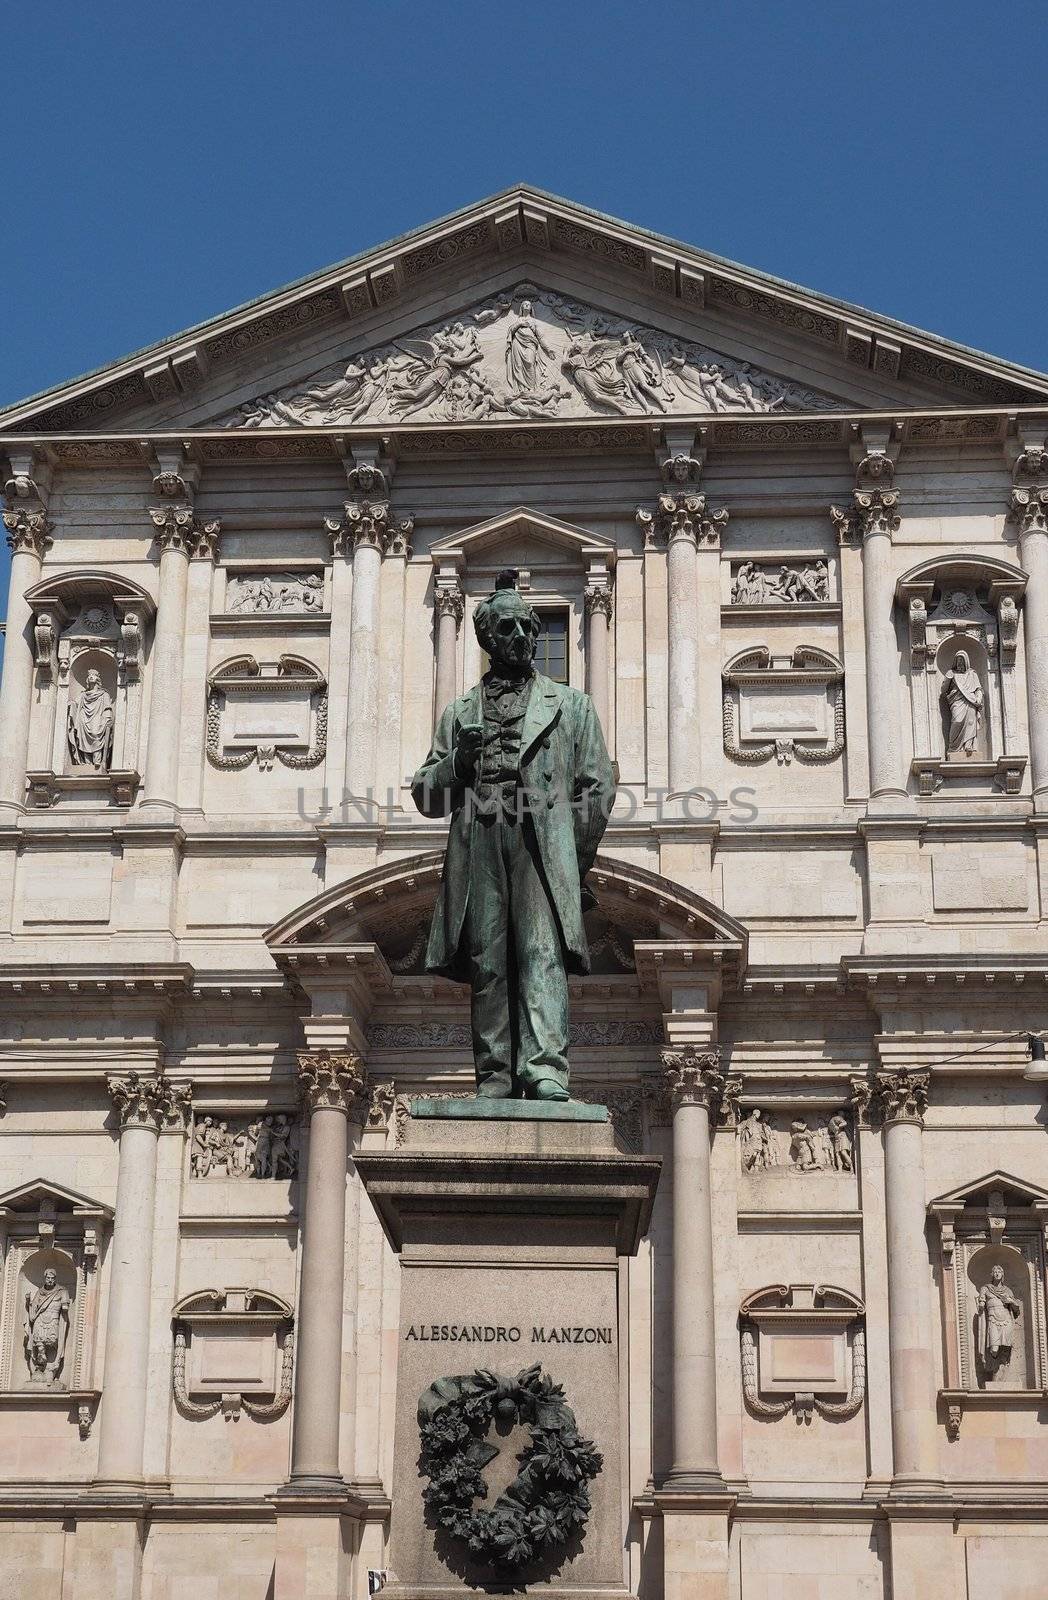 Manzoni statue in Milan by claudiodivizia